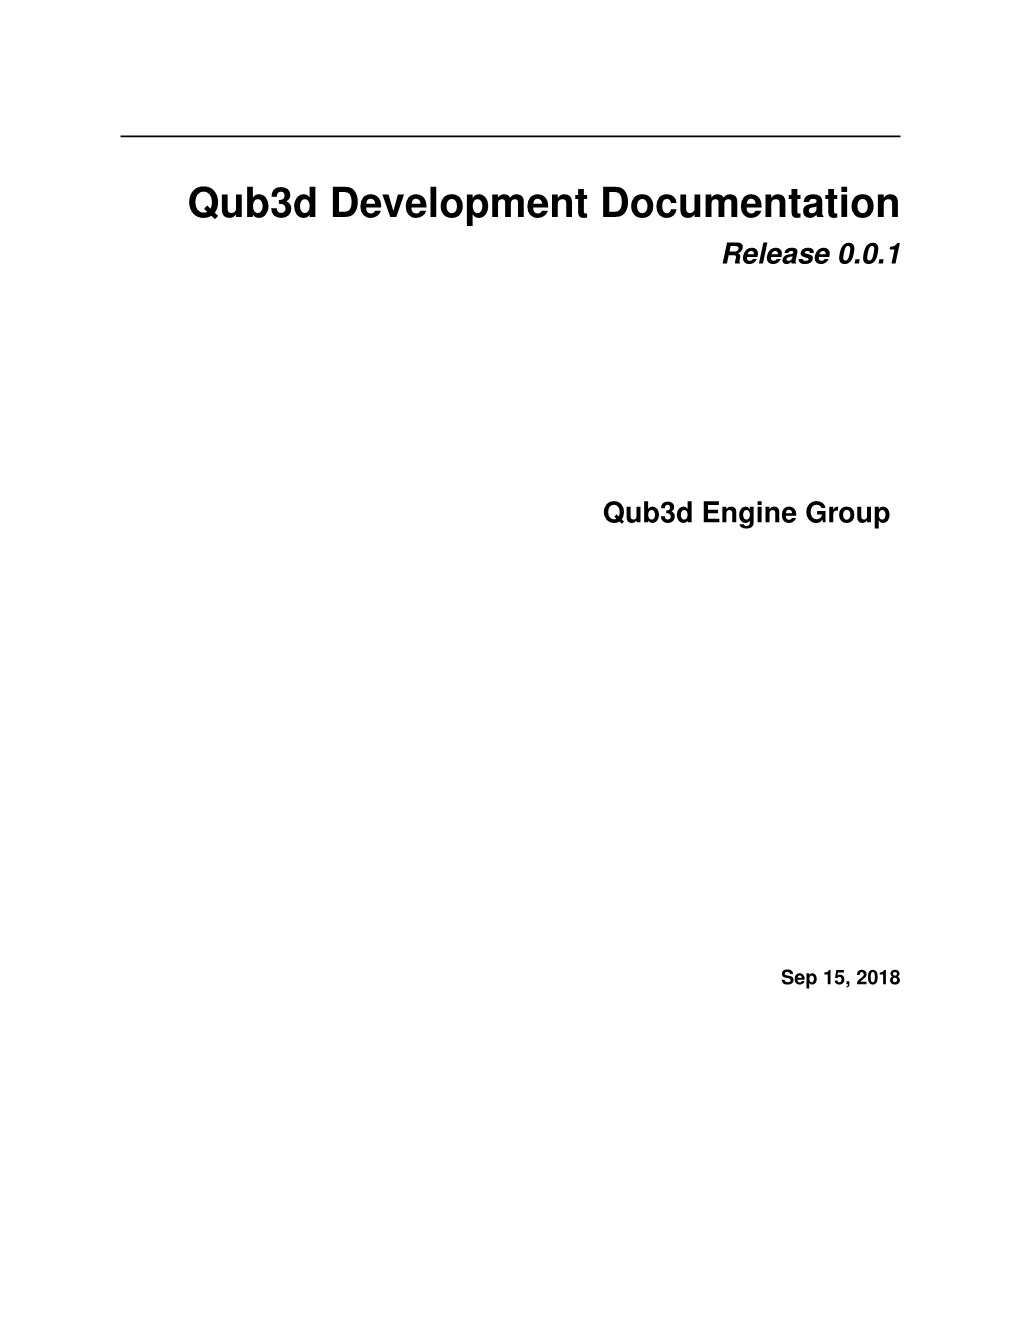 Qub3d Development Documentation Release 0.0.1